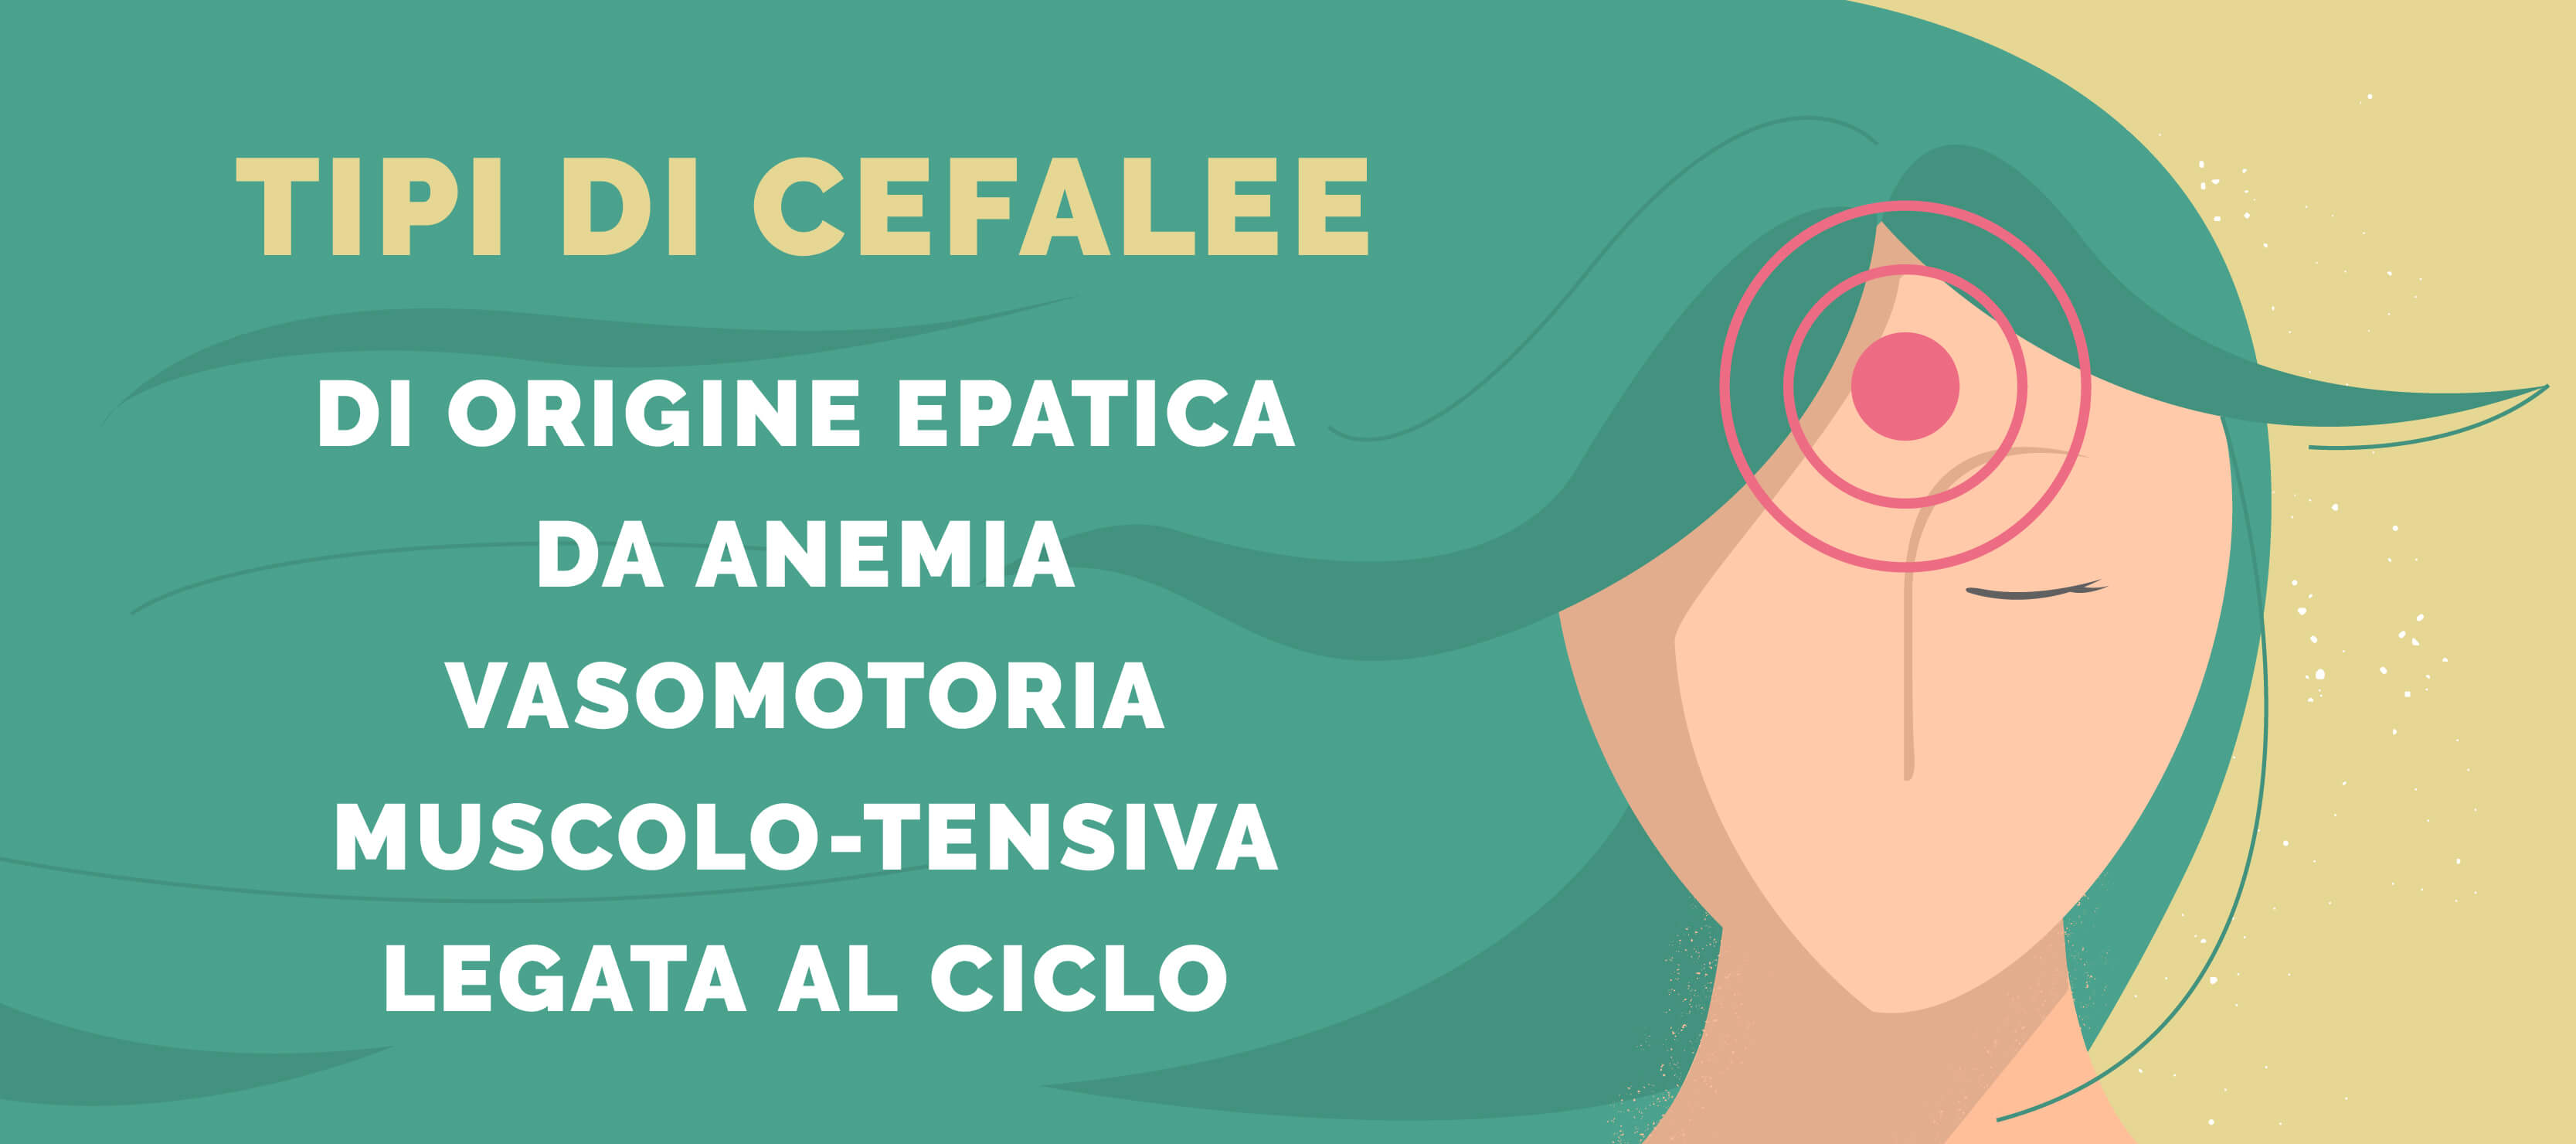 Quali sono i tipi di cefalee e come prevenirle con l’alimentazione